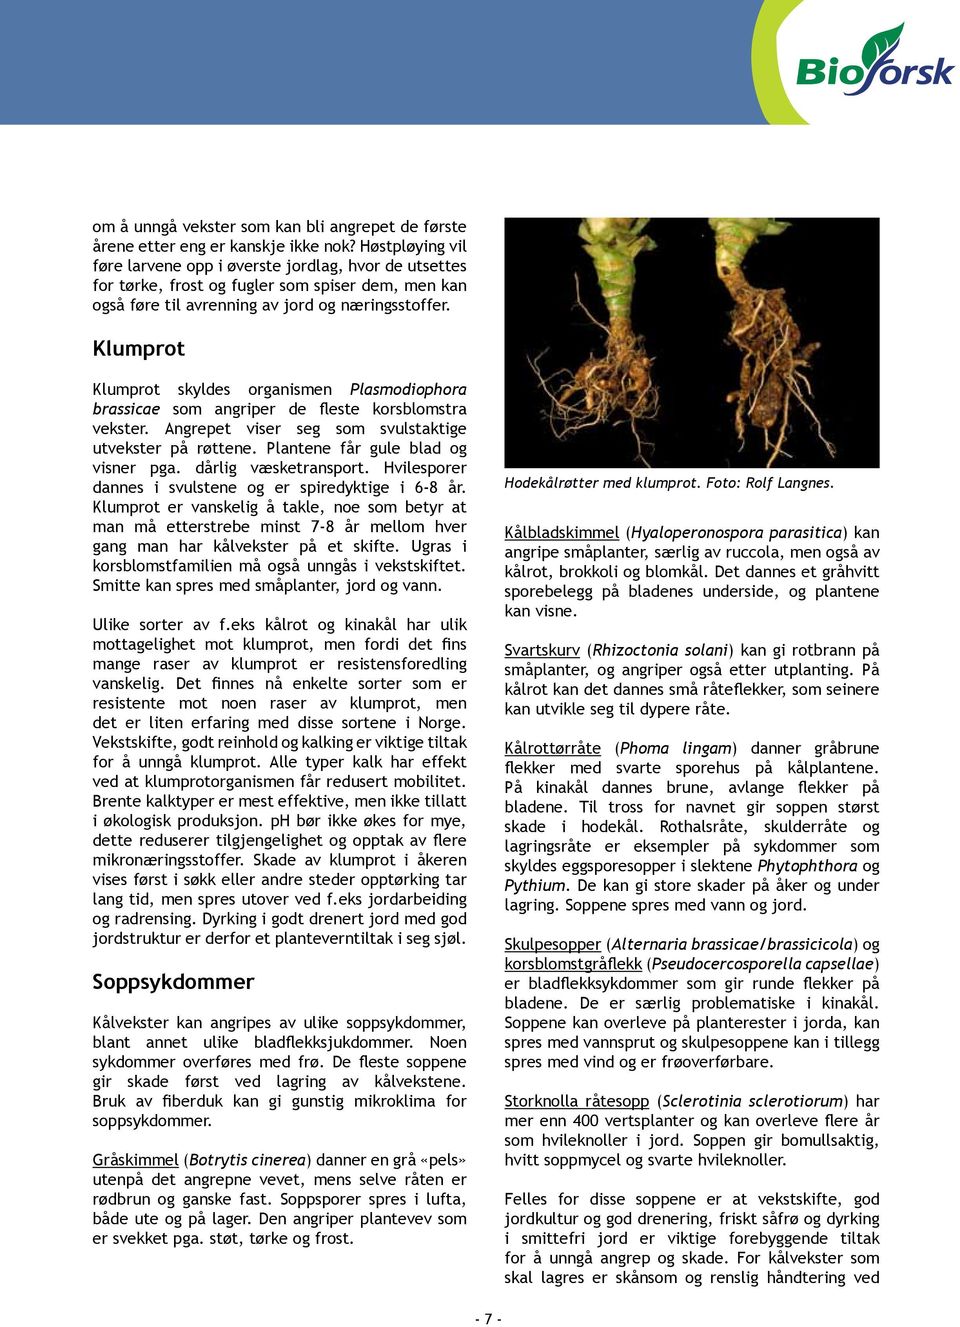 Klumprot Klumprot skyldes organismen Plasmodiophora brassicae som angriper de fleste korsblomstra vekster. Angrepet viser seg som svulstaktige utvekster på røttene.